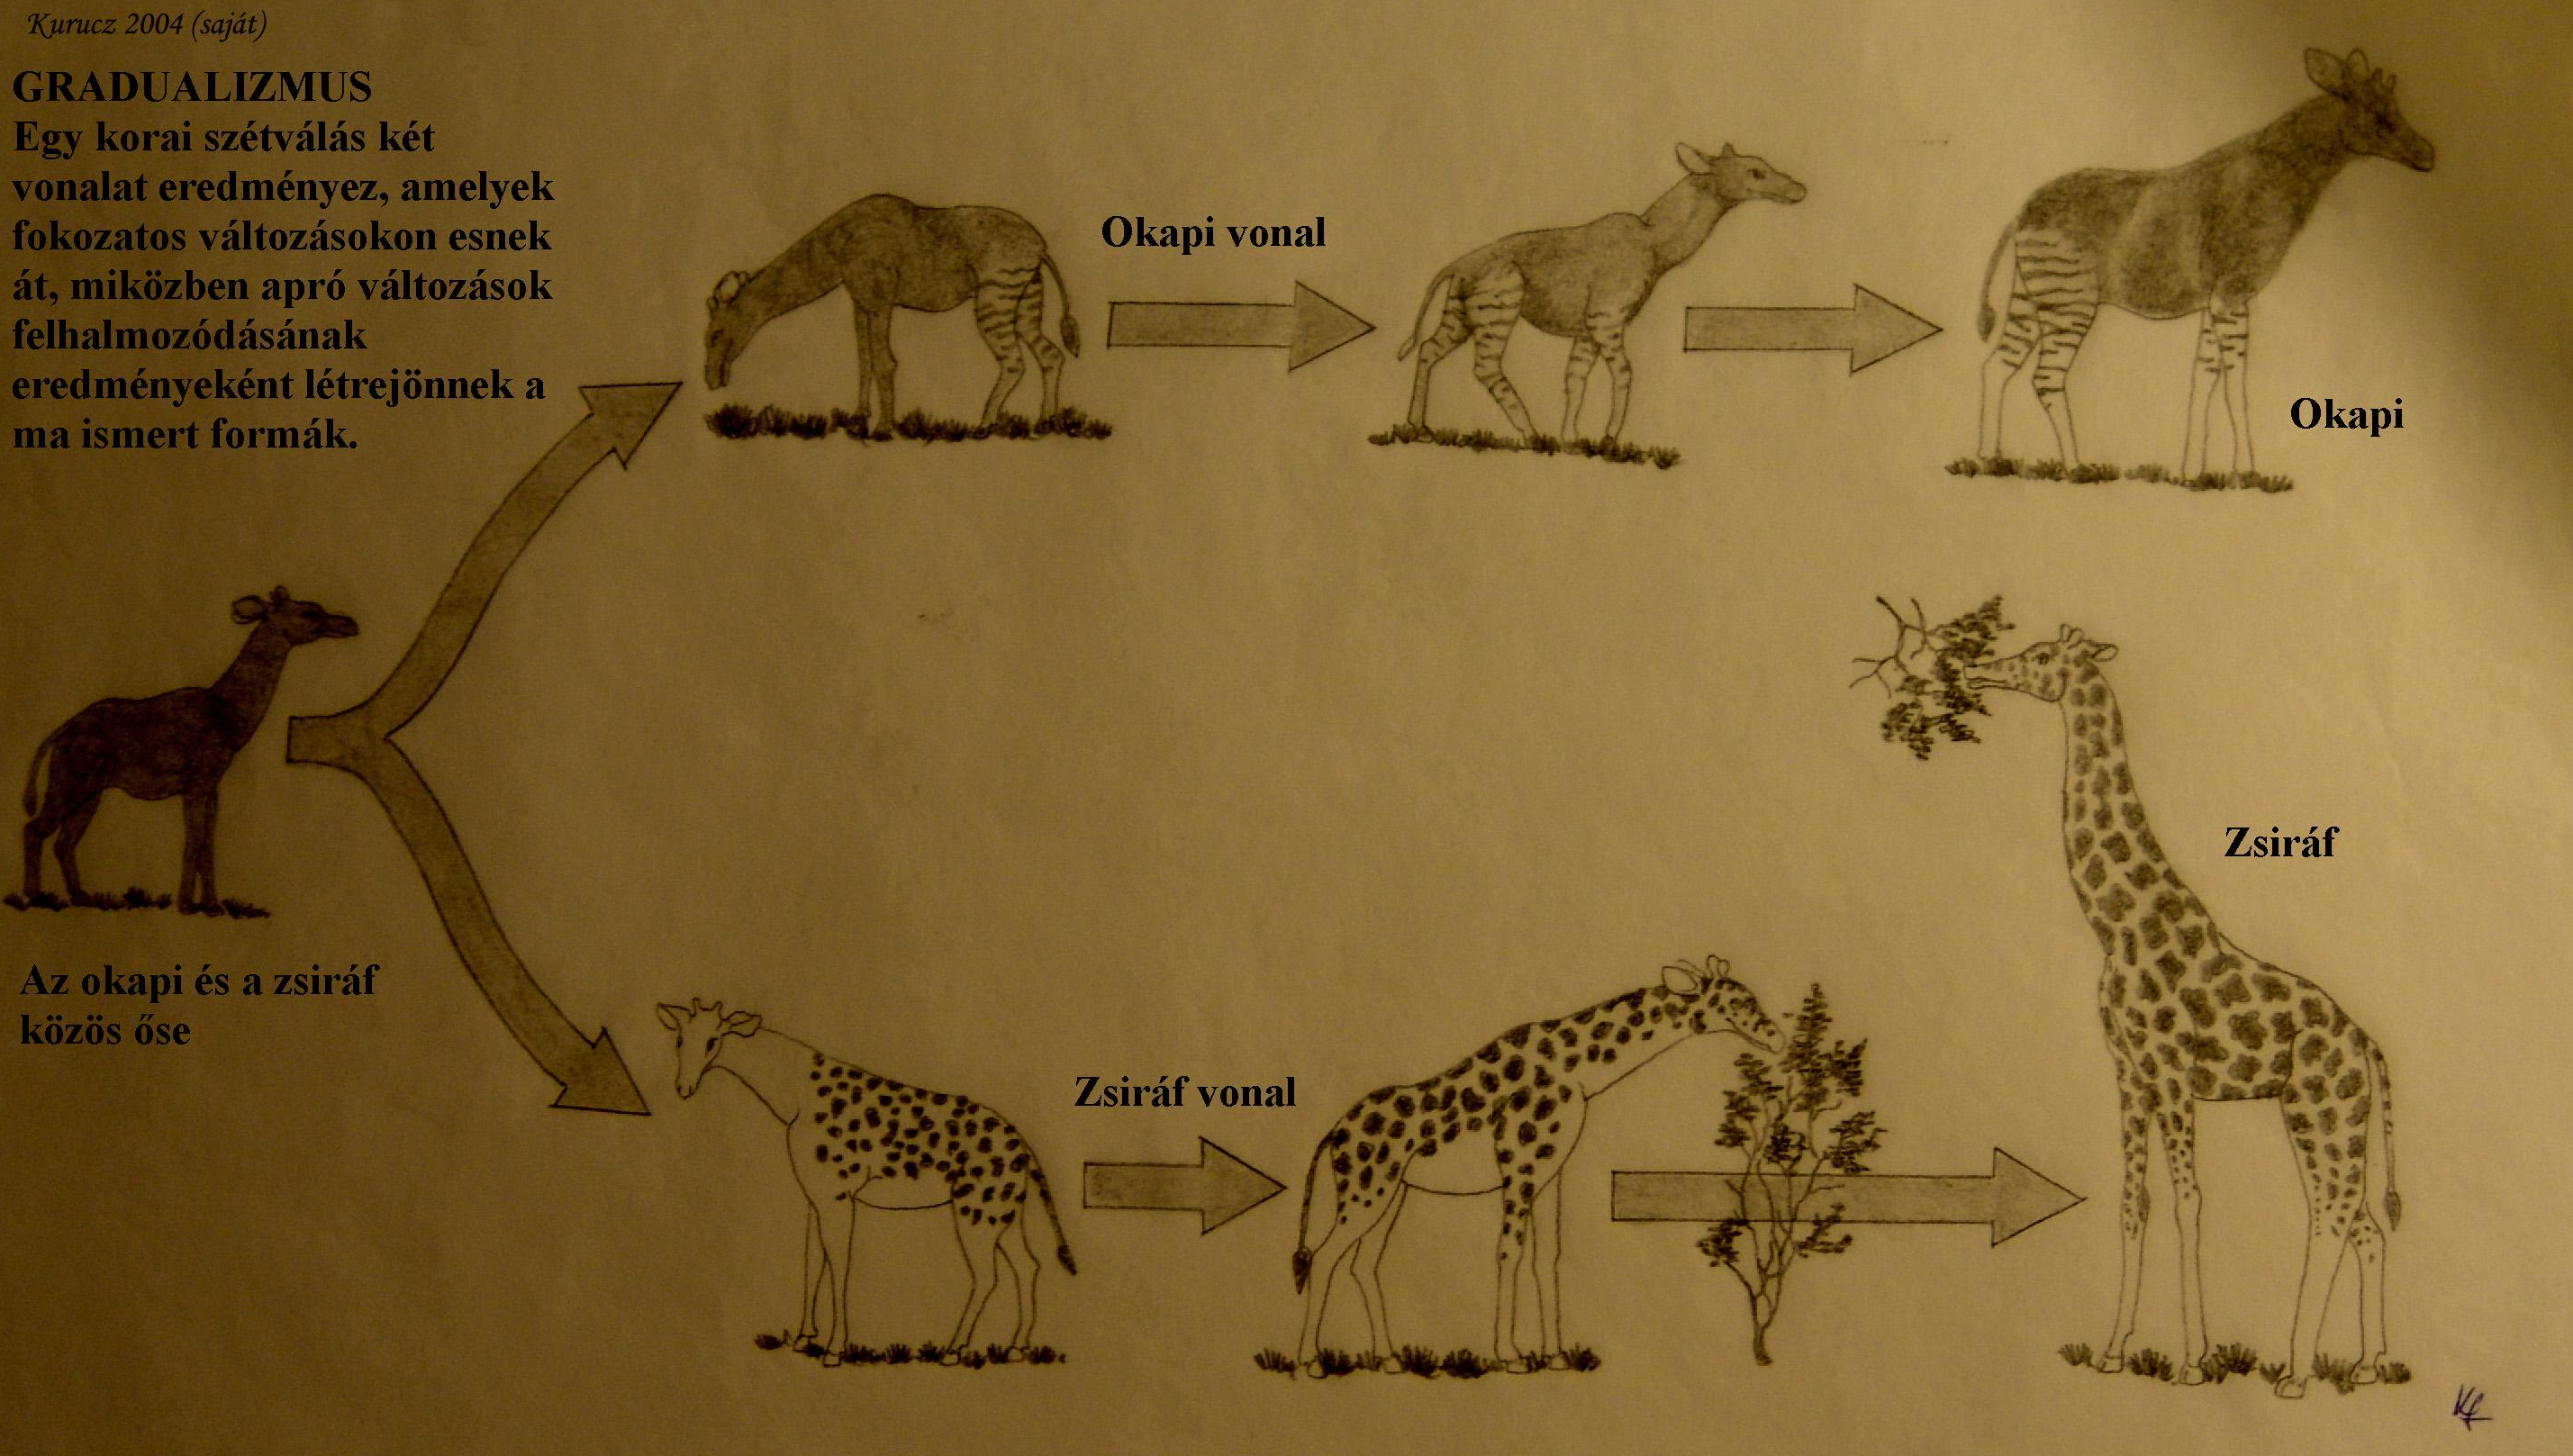 Kladogenezis és anagenezis: az okapi és zsiráf közös ősének populációja kettéválik és differenciálódik. Ez a lépés kladogenezis. A szeparált vonalakon belüli változásokat anagenezisnek hívjuk.